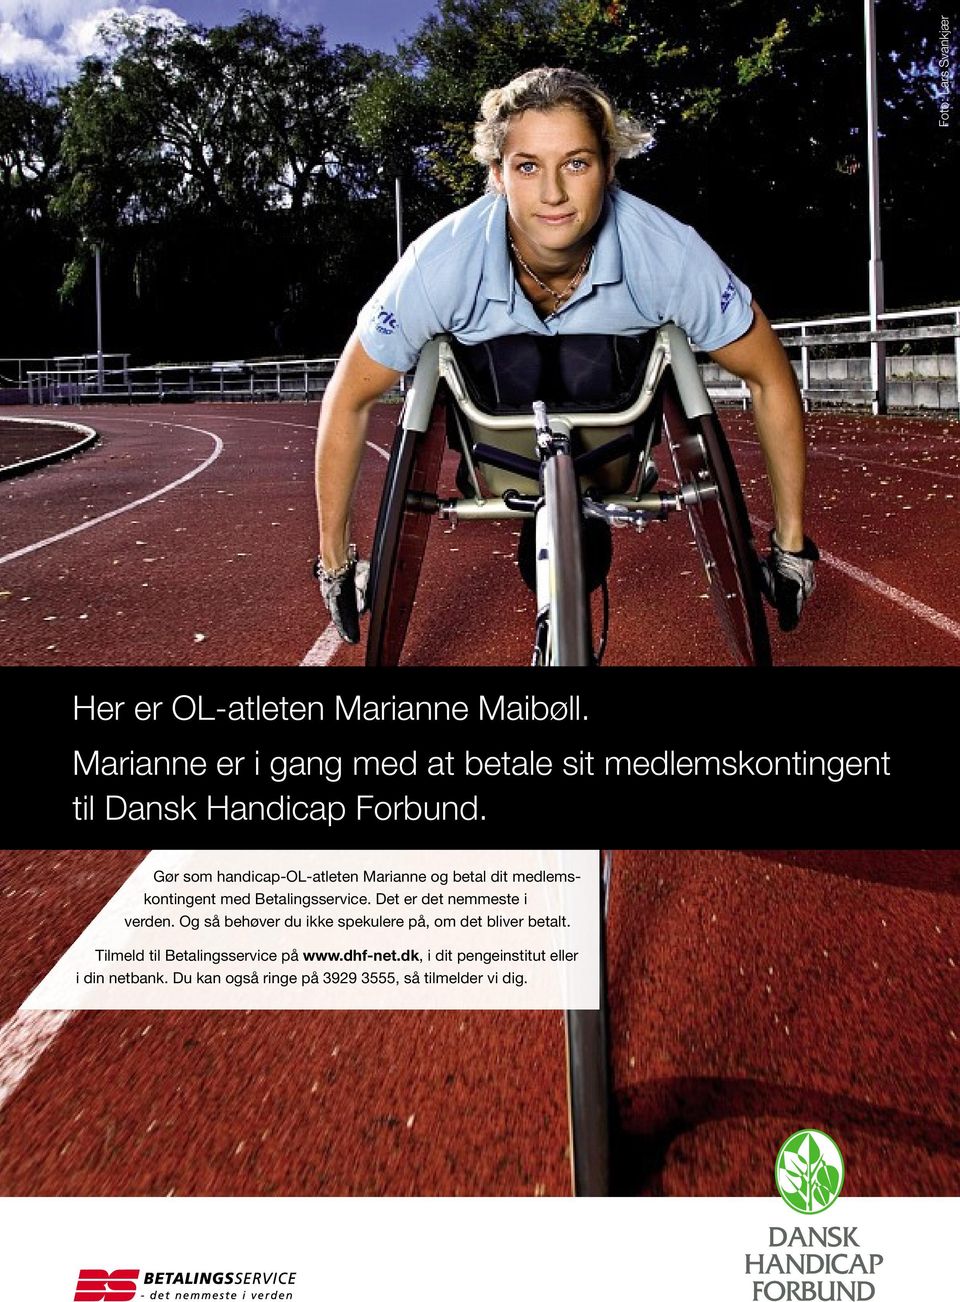 Gør som handicap-ol-atleten Marianne og betal dit medlemskontingent med Betalingsservice.